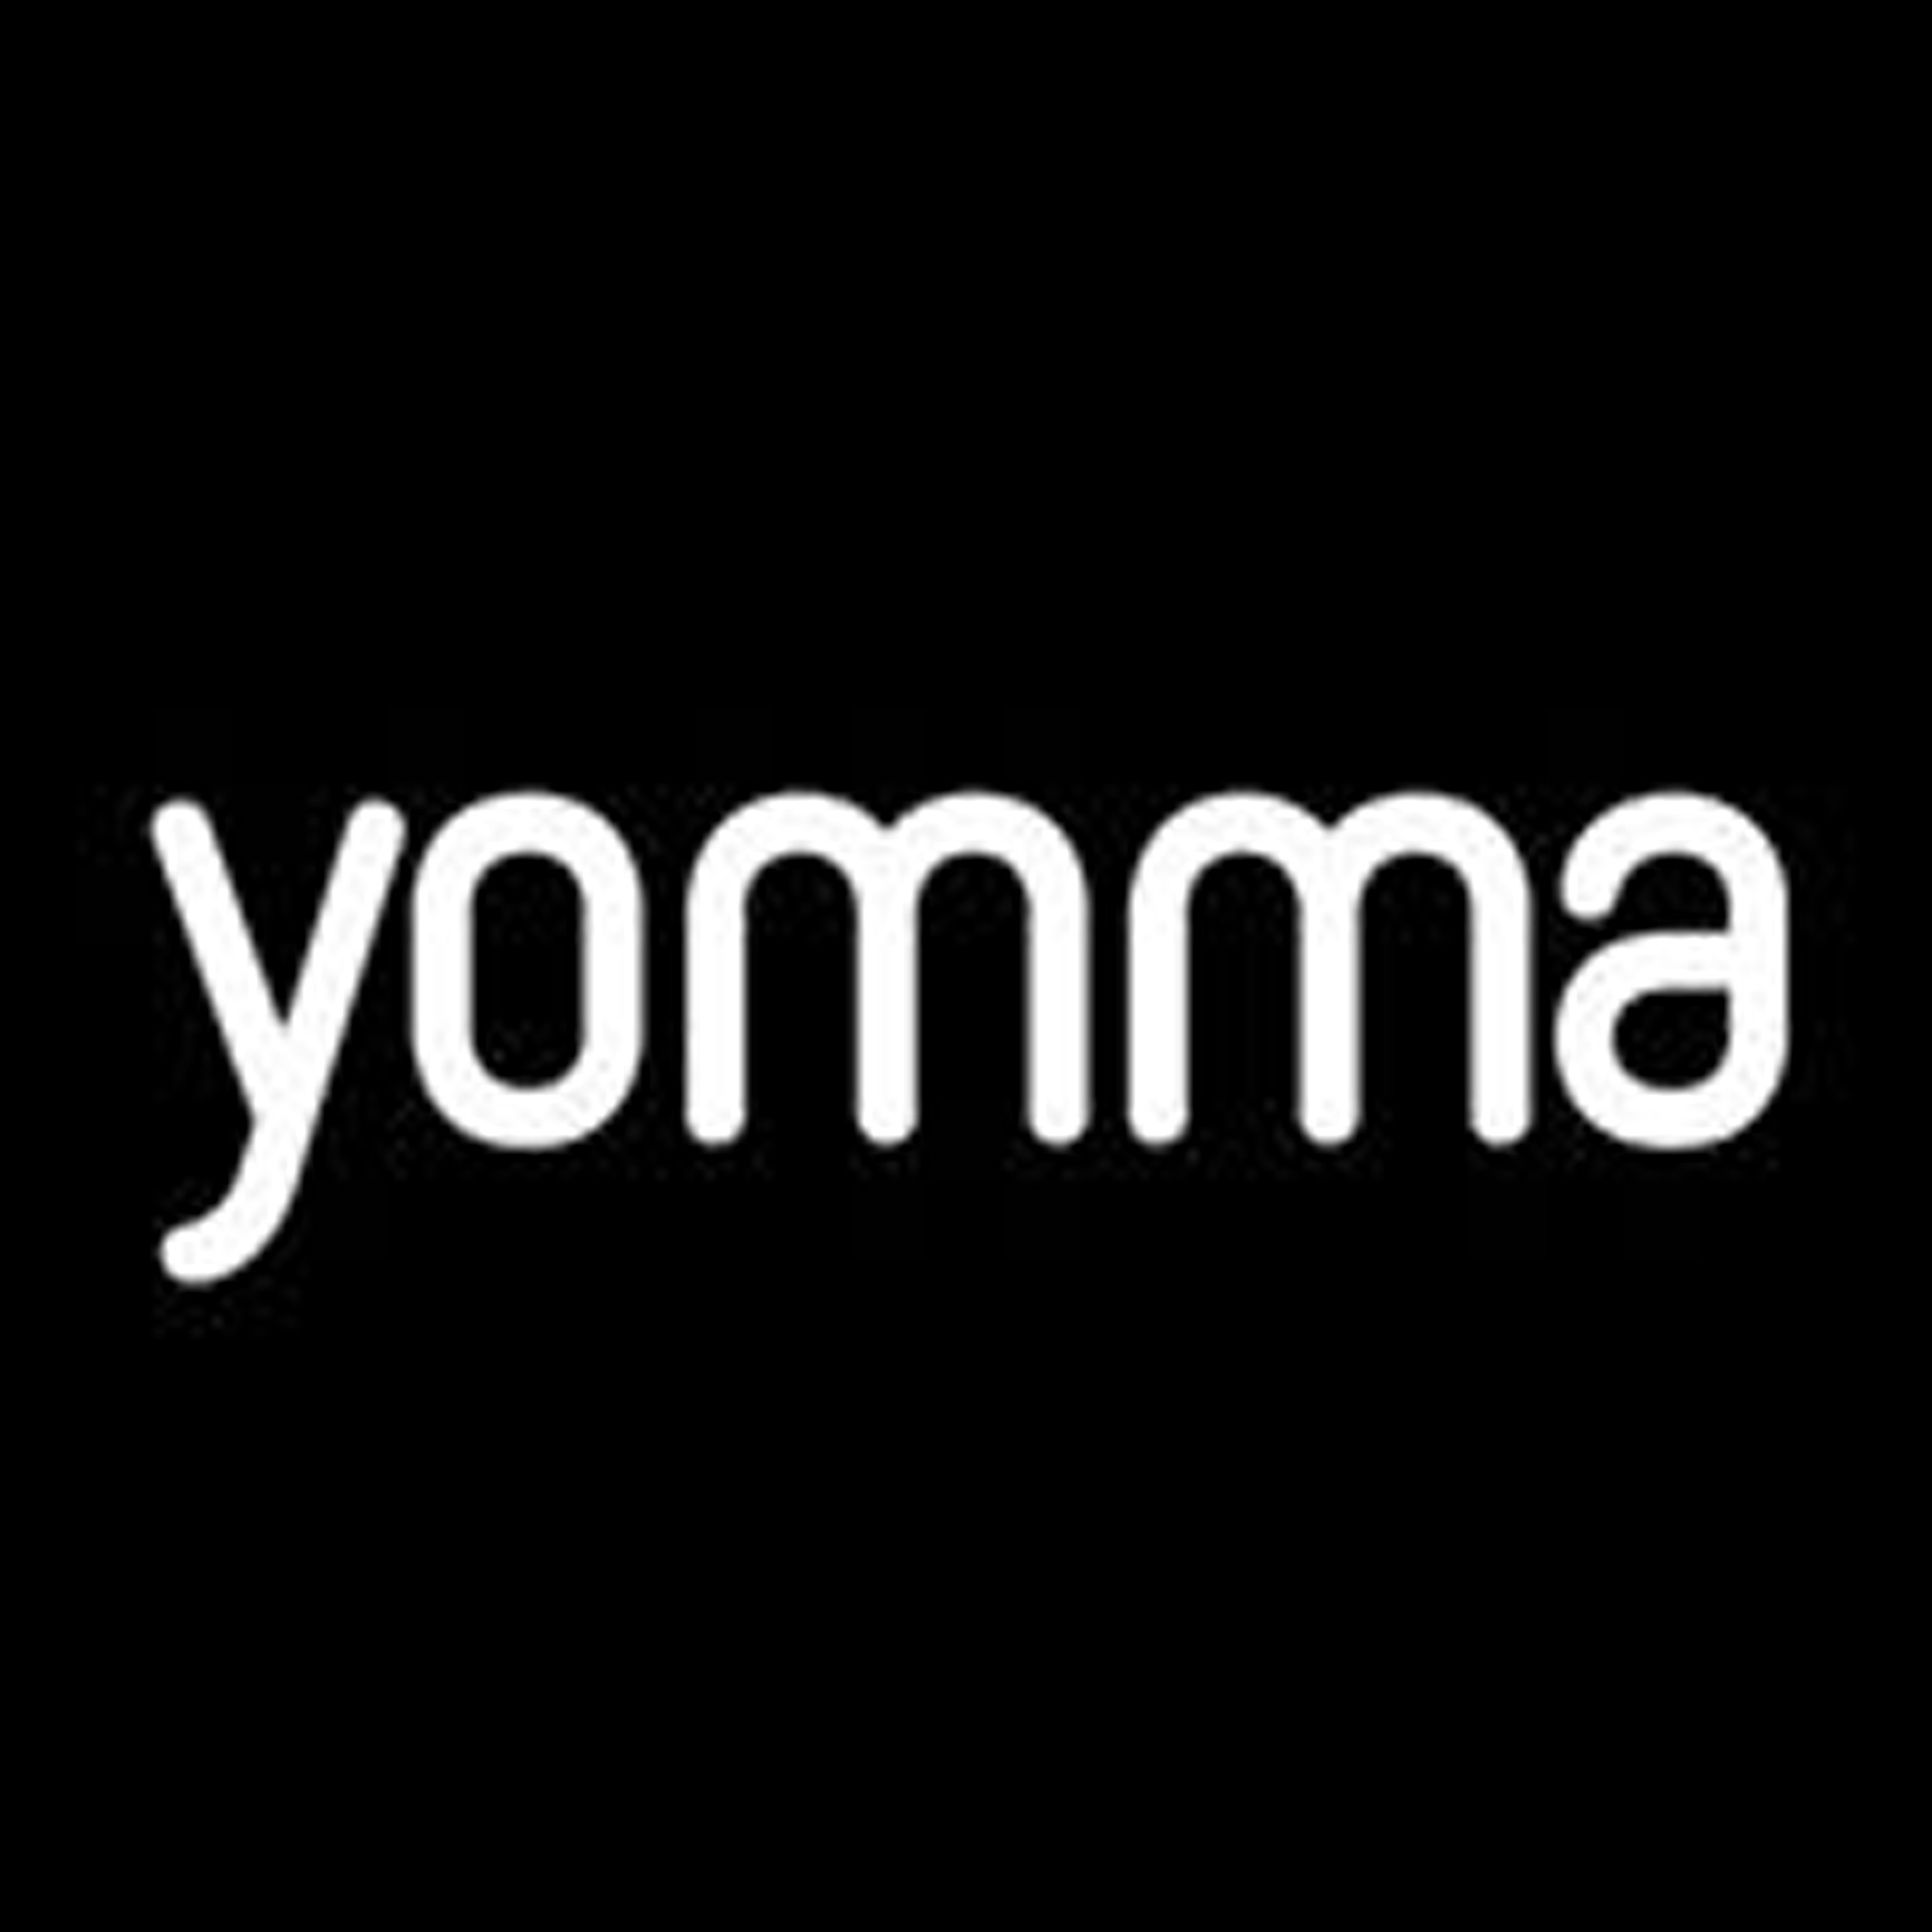 yomma